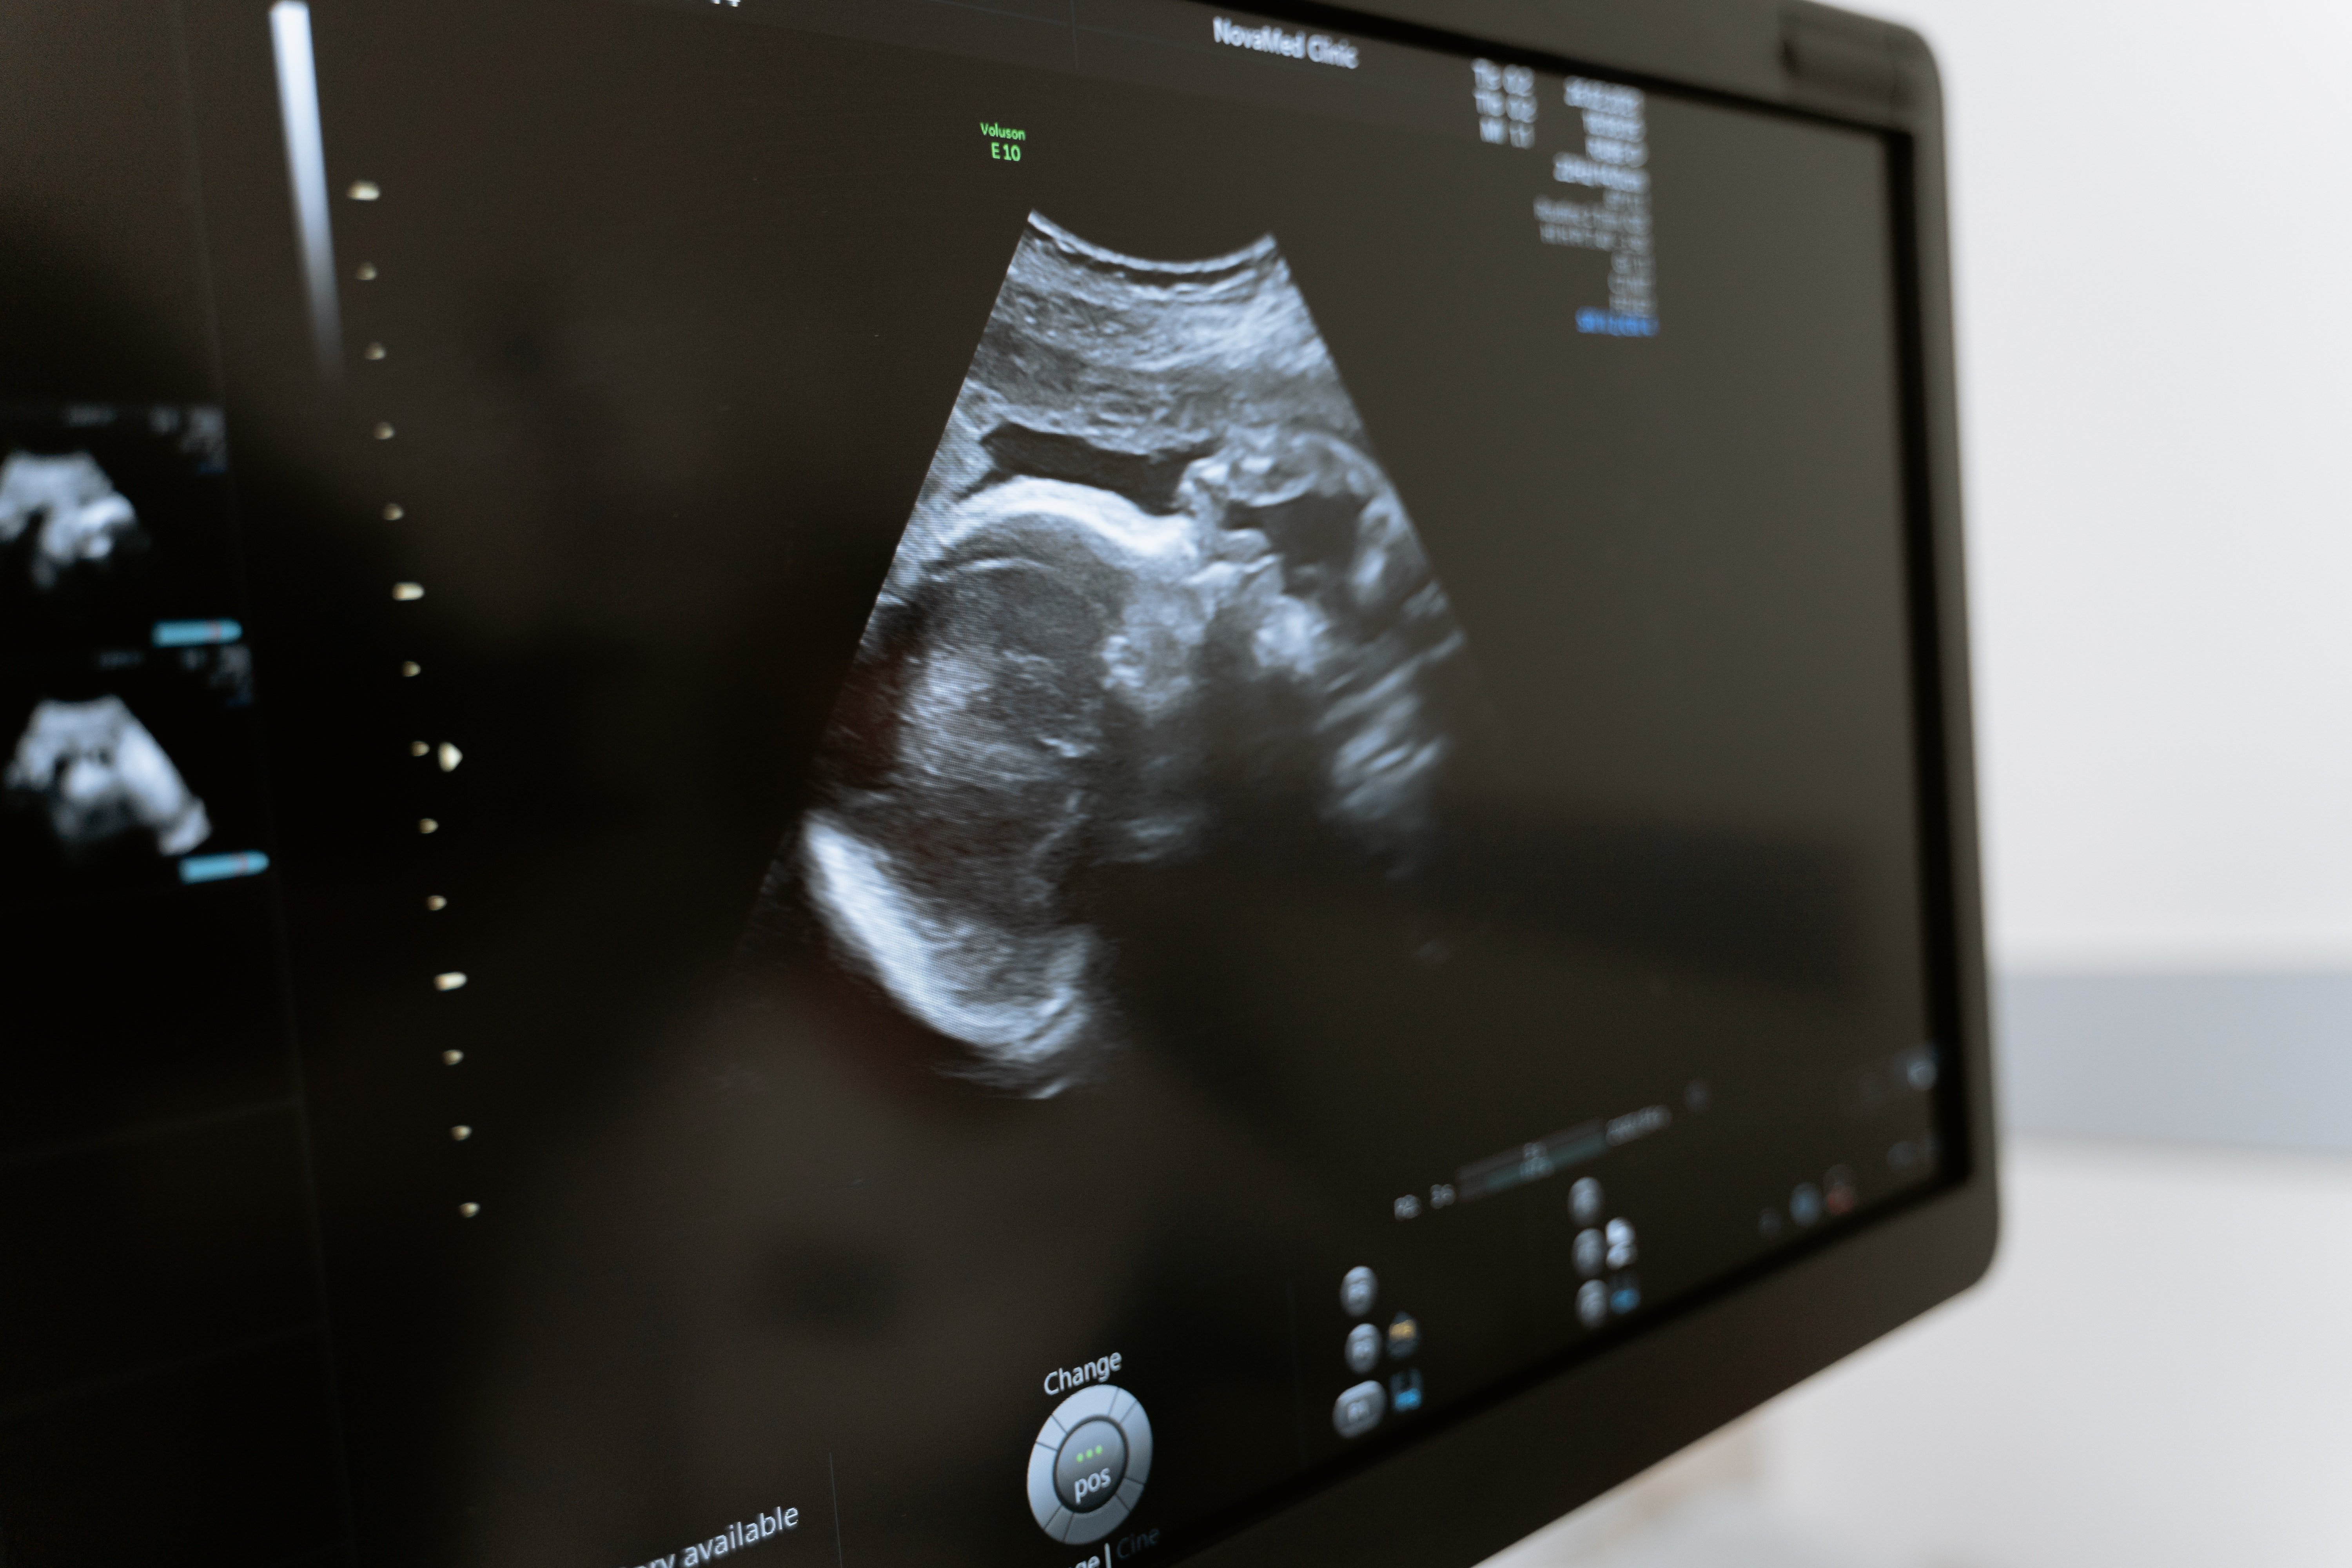 Während eines Scans stellten die Ärzte fest, dass es ein weiteres Baby gab. | Quelle: Unsplash